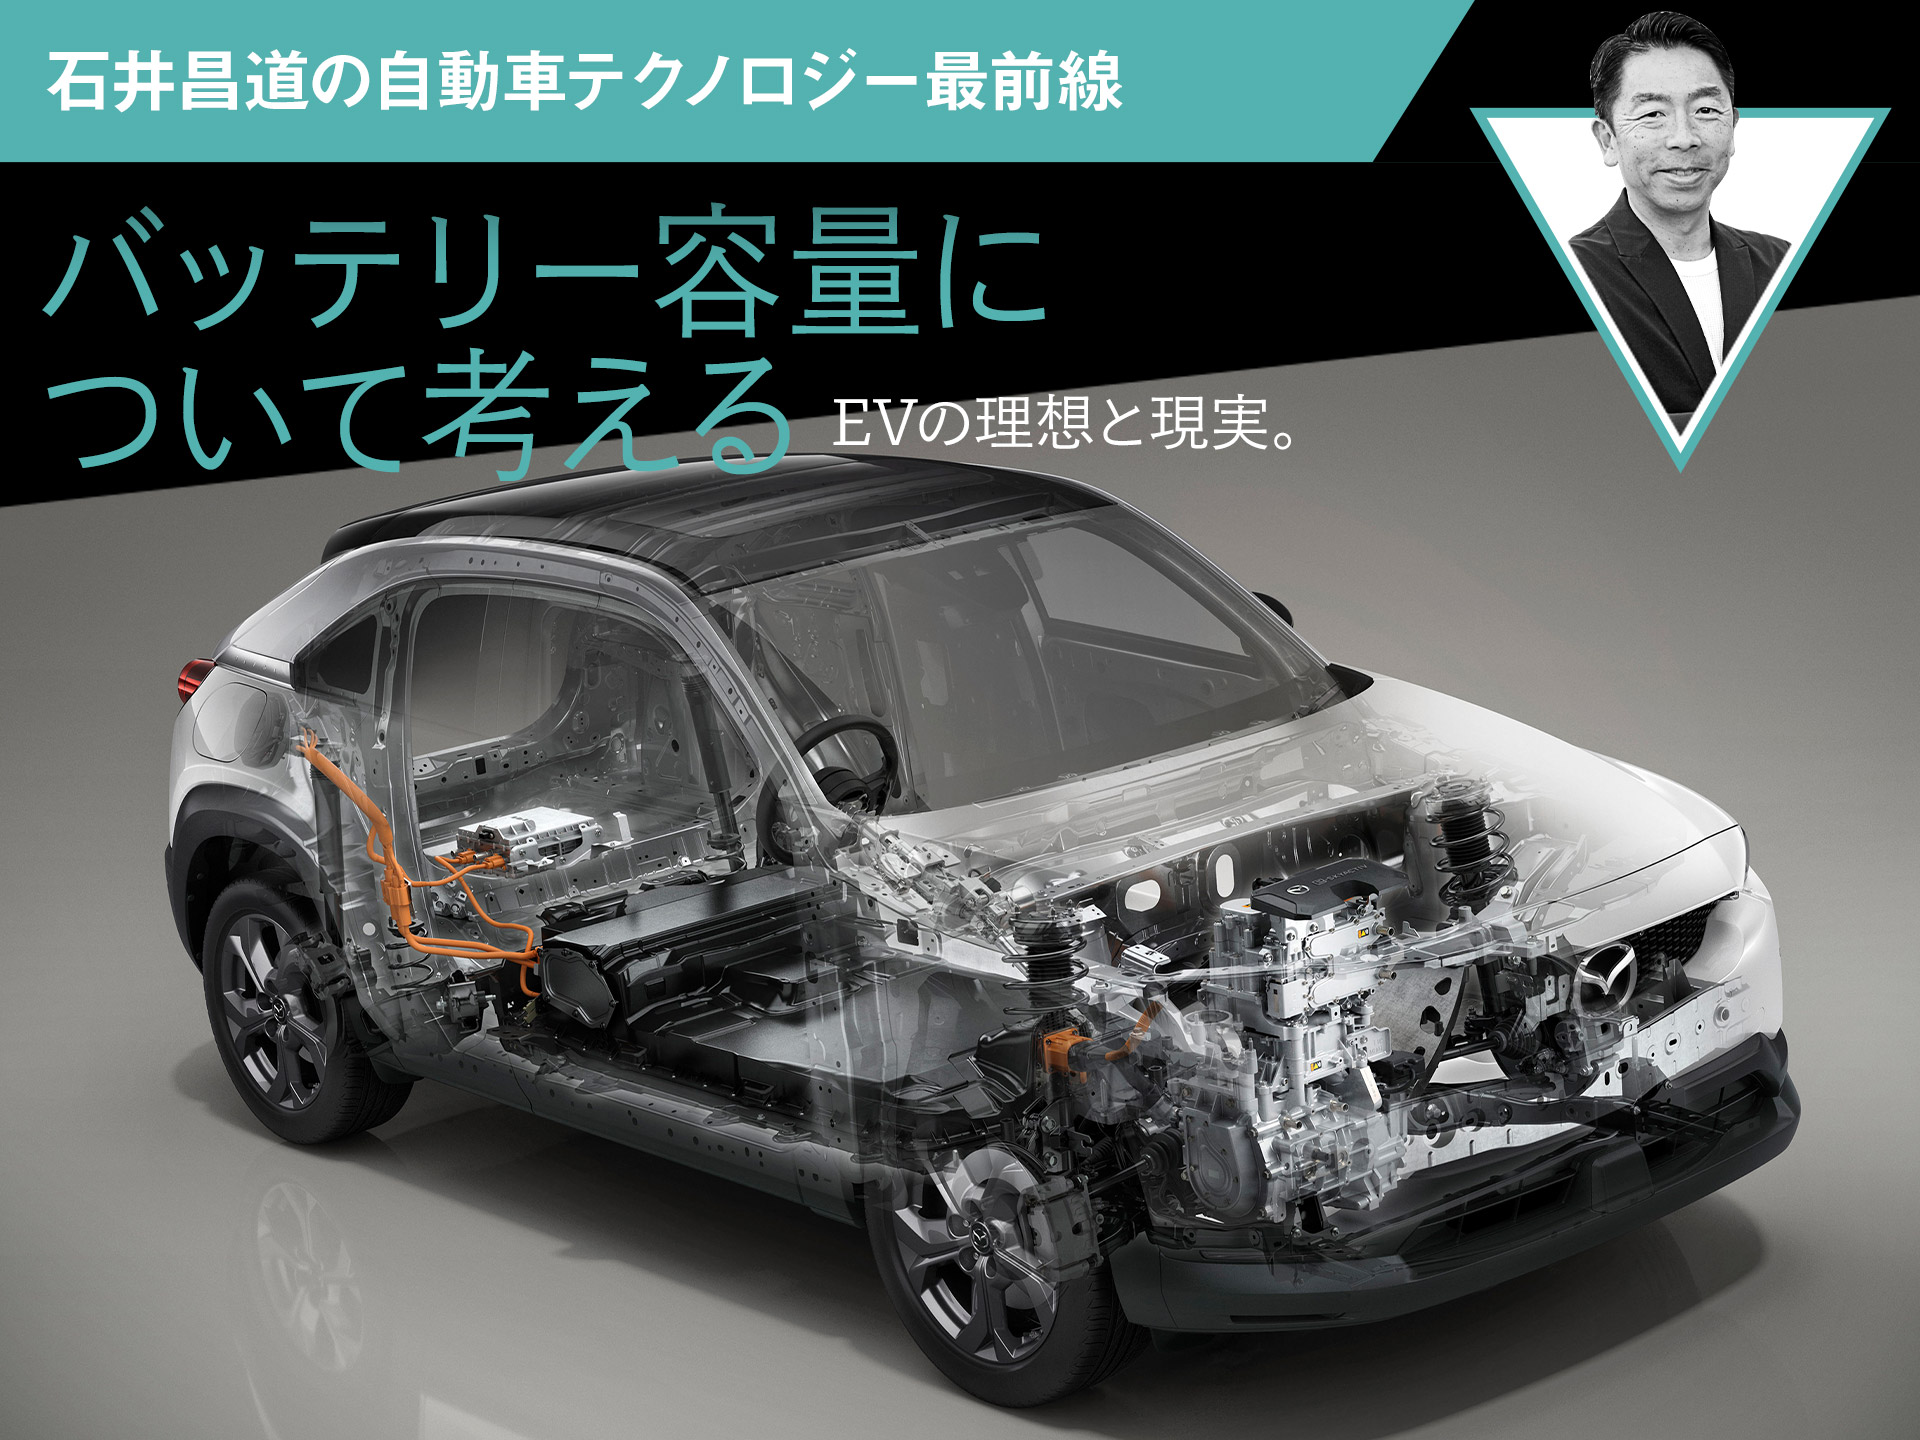 Evの理想と現実 バッテリー容量について考える 石井昌道の自動車テクノロジー最前線 中古車なら グーネット